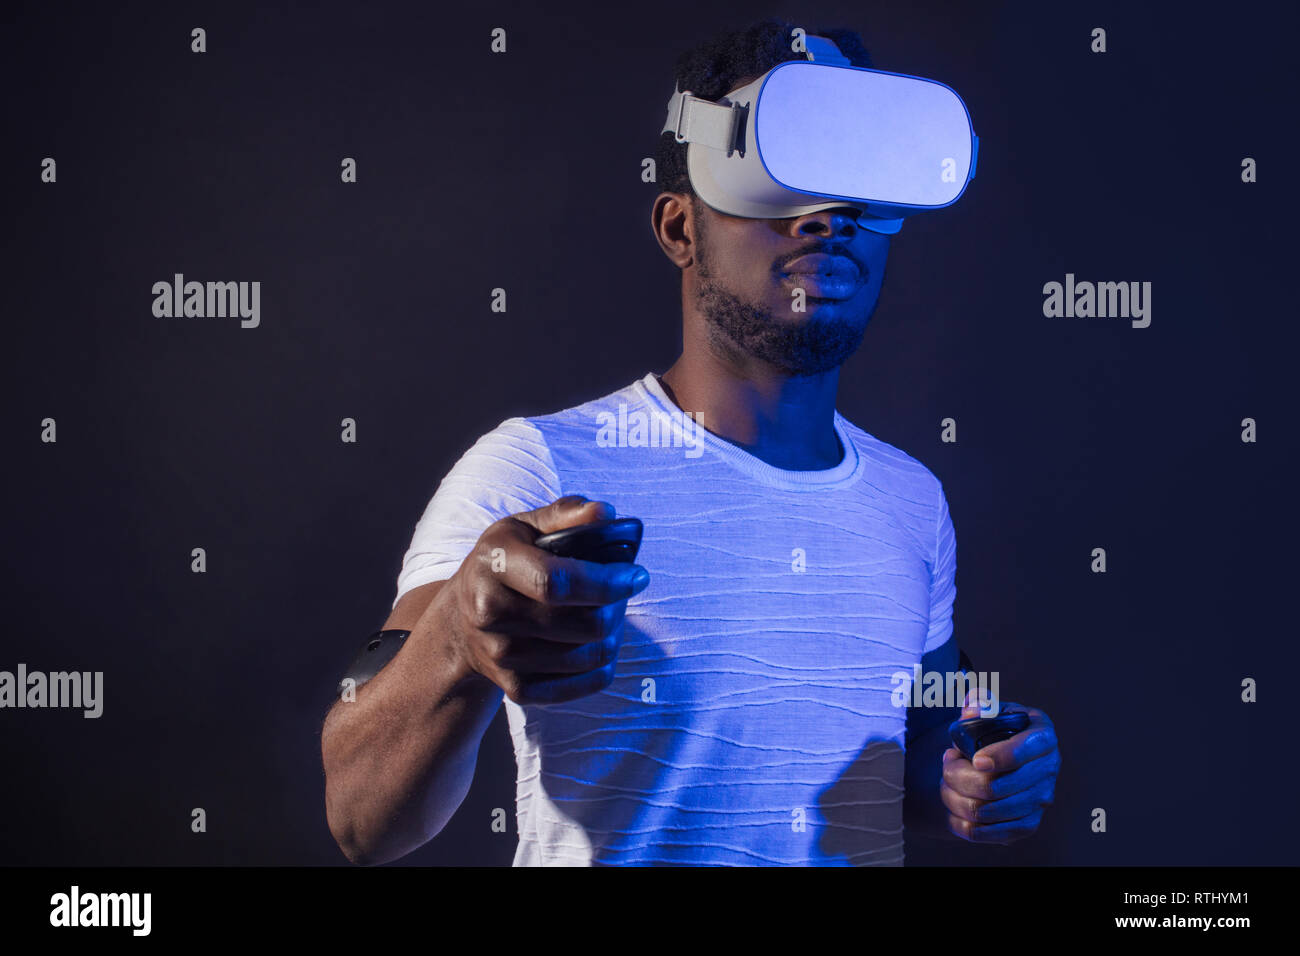 Dunkelhäutige männliche tourisistic Ventilator 3D-Tour nach Asien, stehend mit Head Mounted Display und Handheld Controller auf dunklem Hintergrund mit Rot Blau Stockfoto